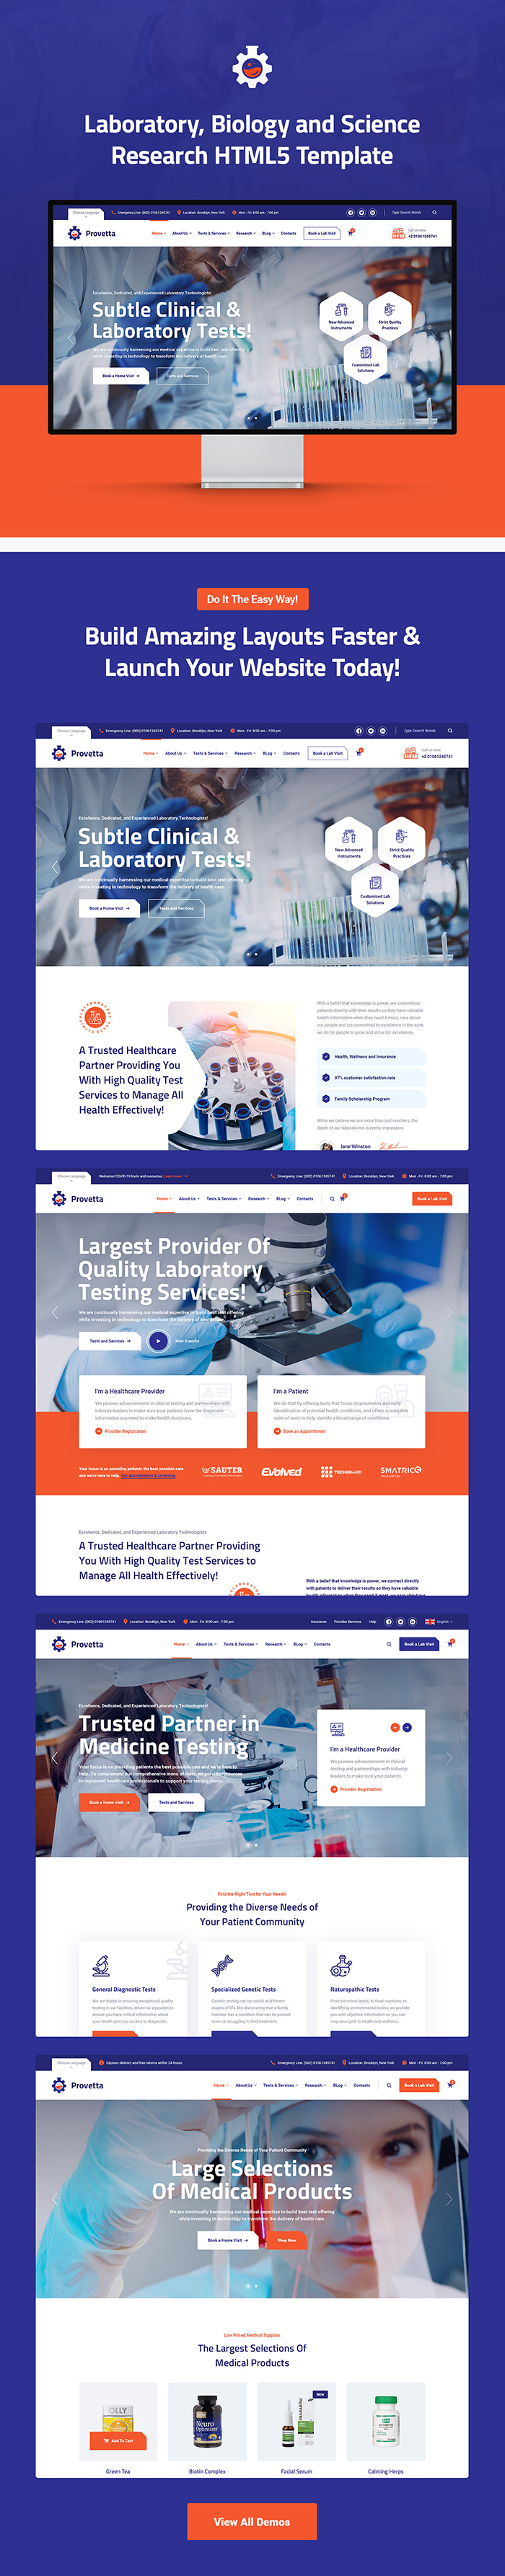 Provetta – Laboratory & Science Research HTML5 Template - 5